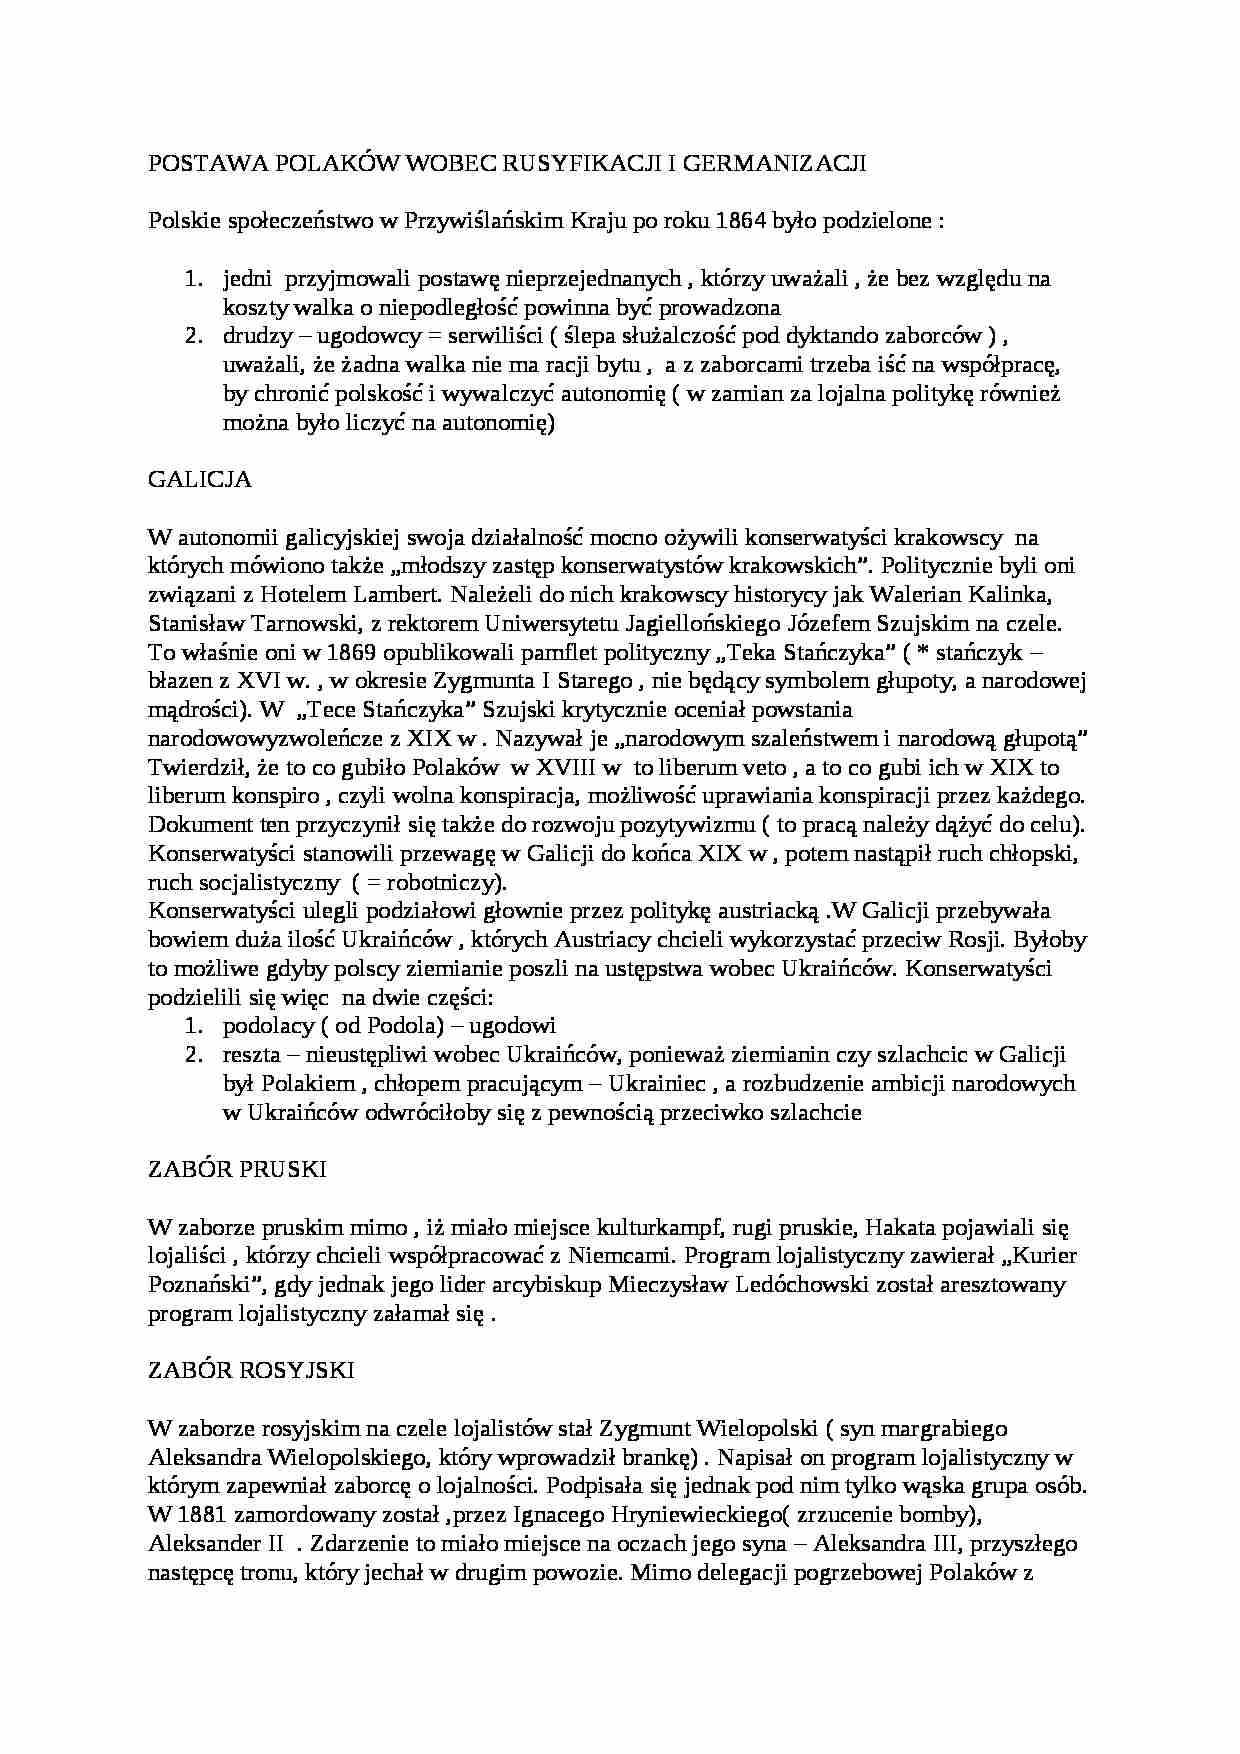 Postawa Polaków wobec germanizacji i rusyfikacji - strona 1